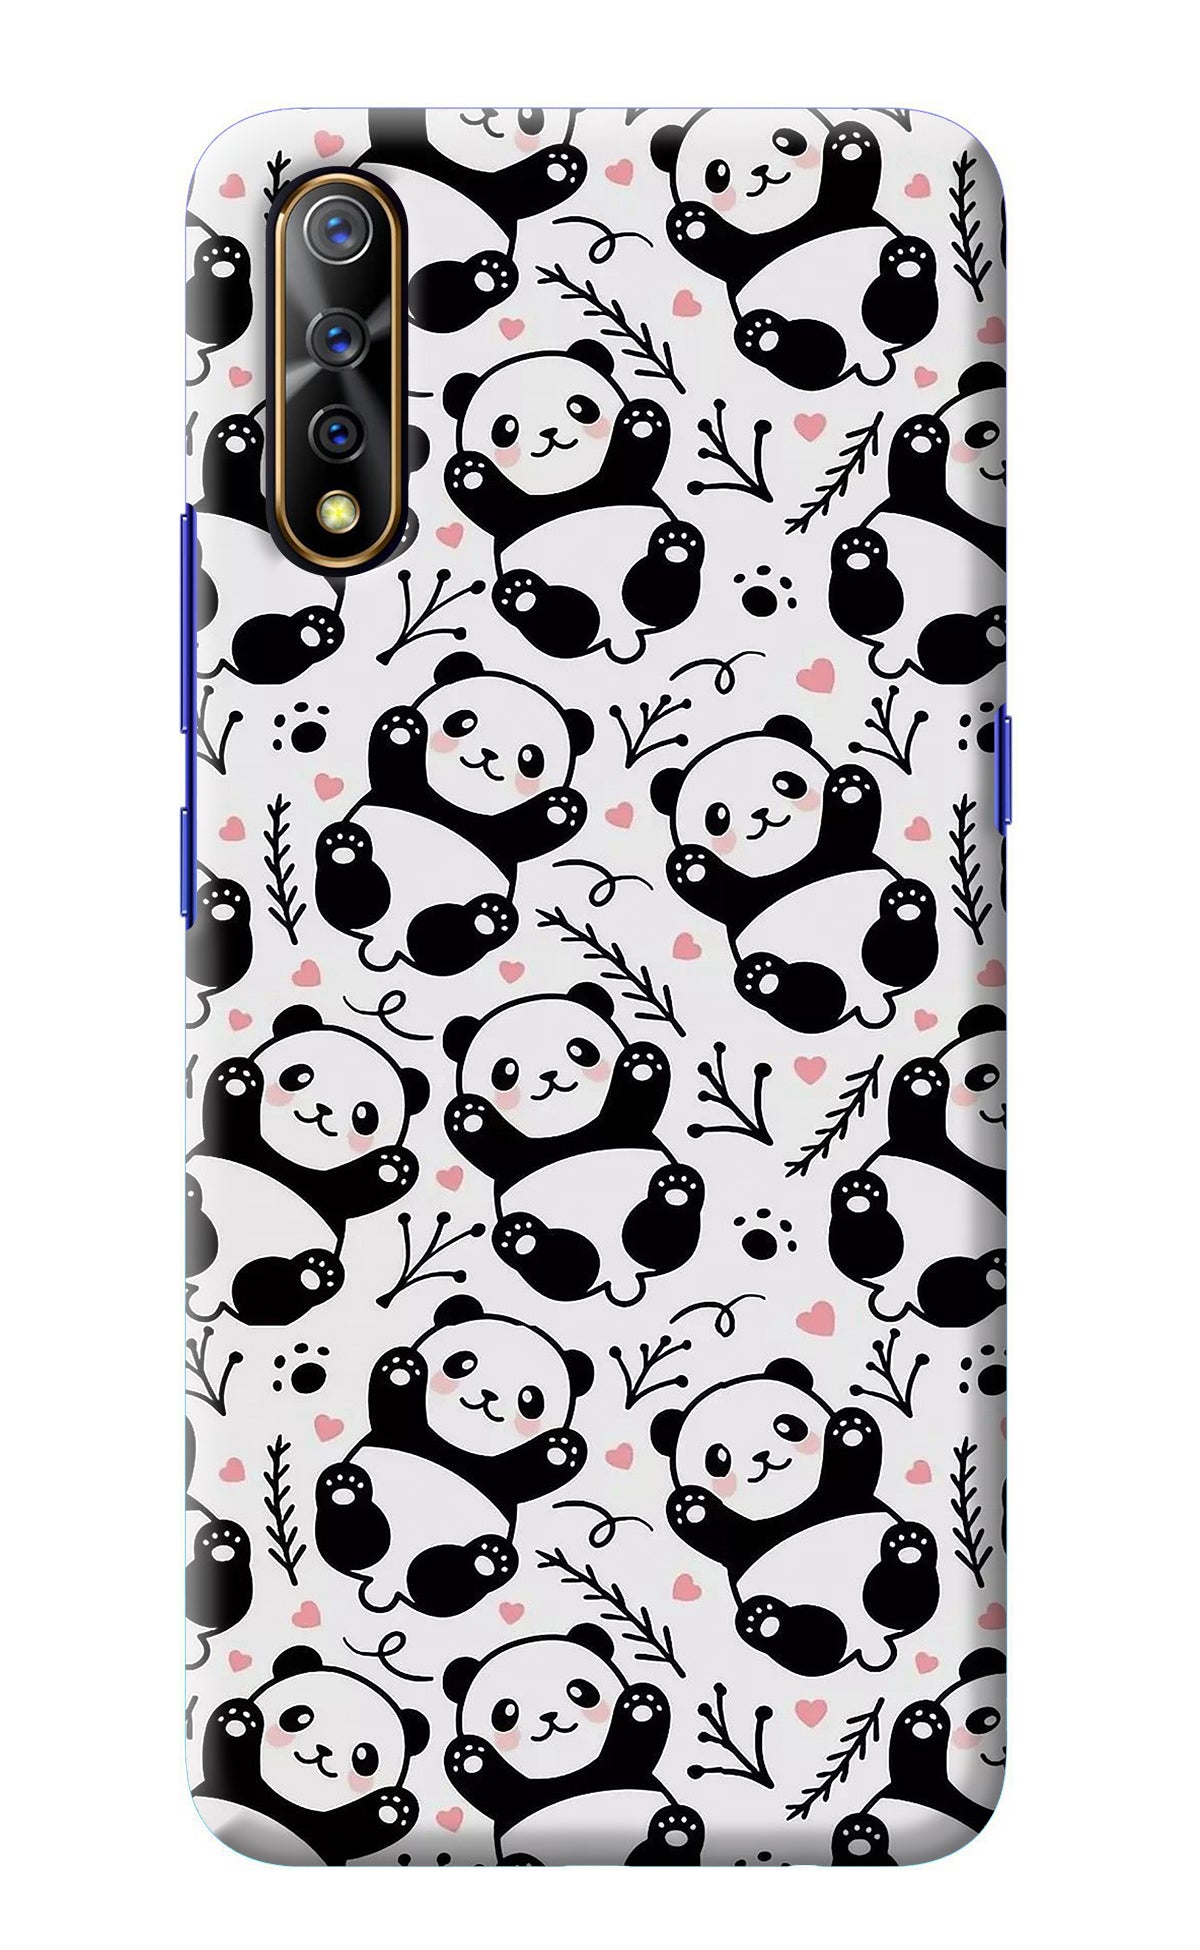 Cute Panda Vivo S1/Z1x Back Cover